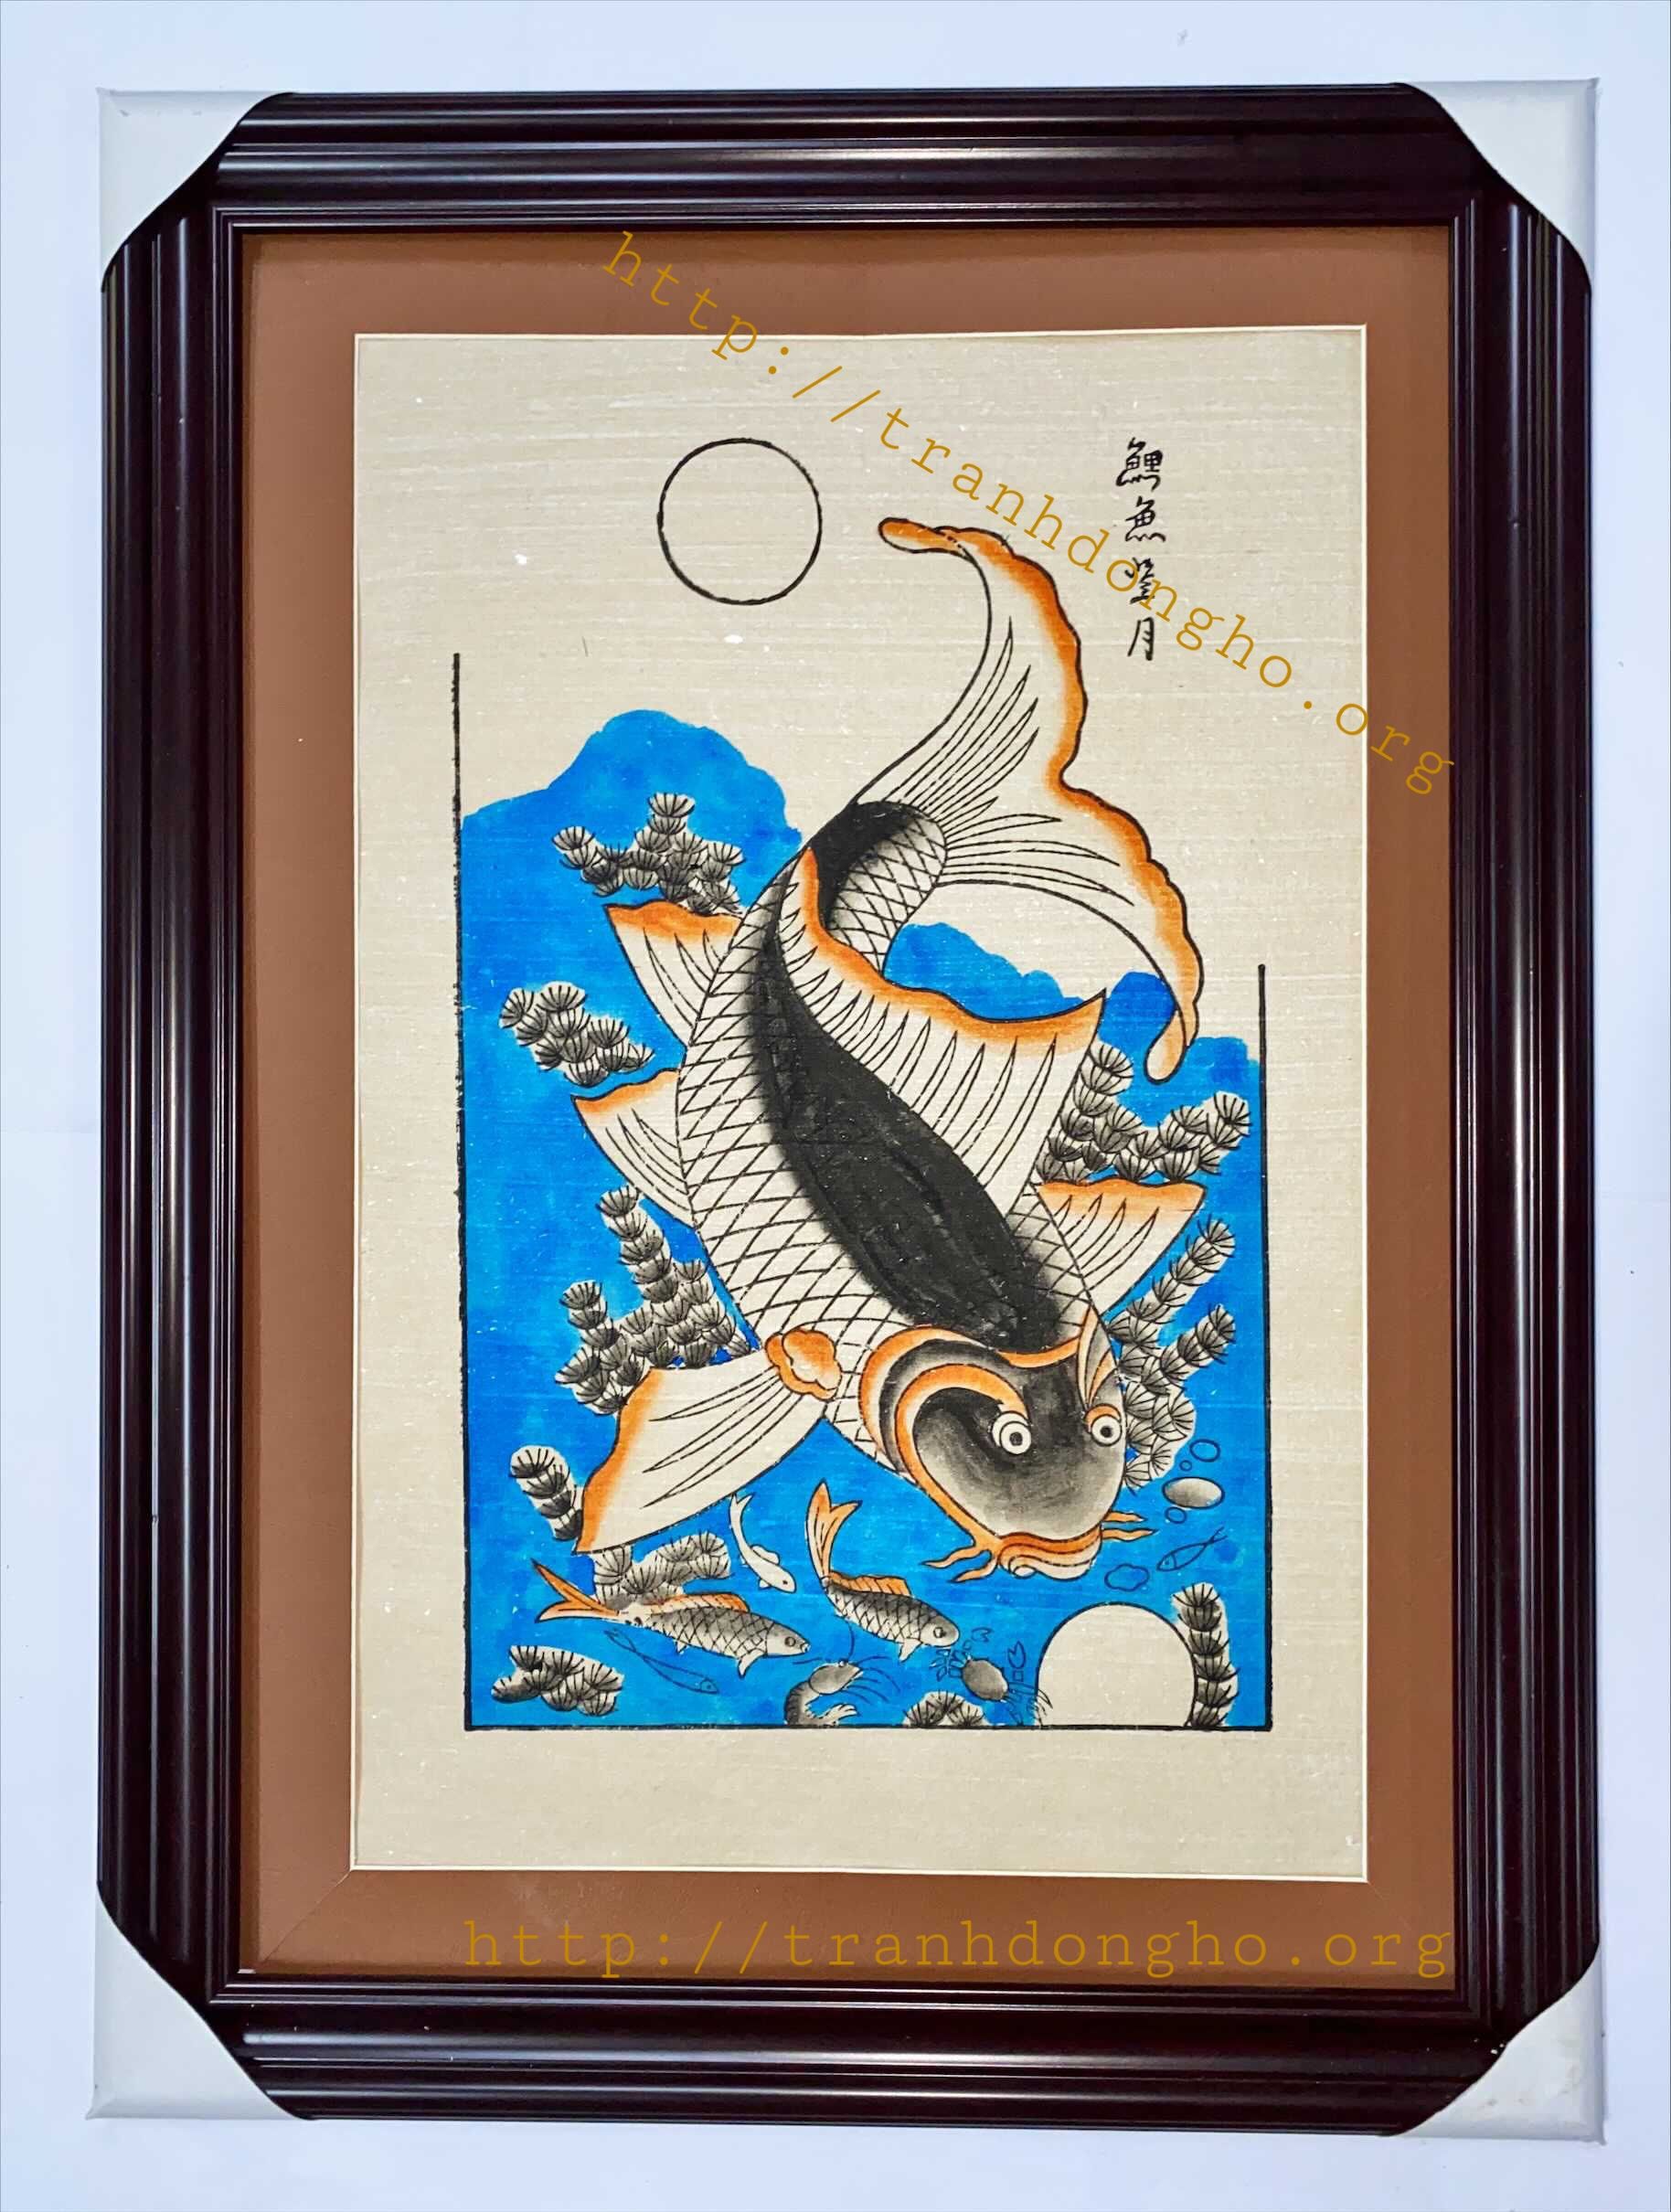 Ý nghĩa tranh cá chép trông trăng đông hồ từ nghệ nhân.